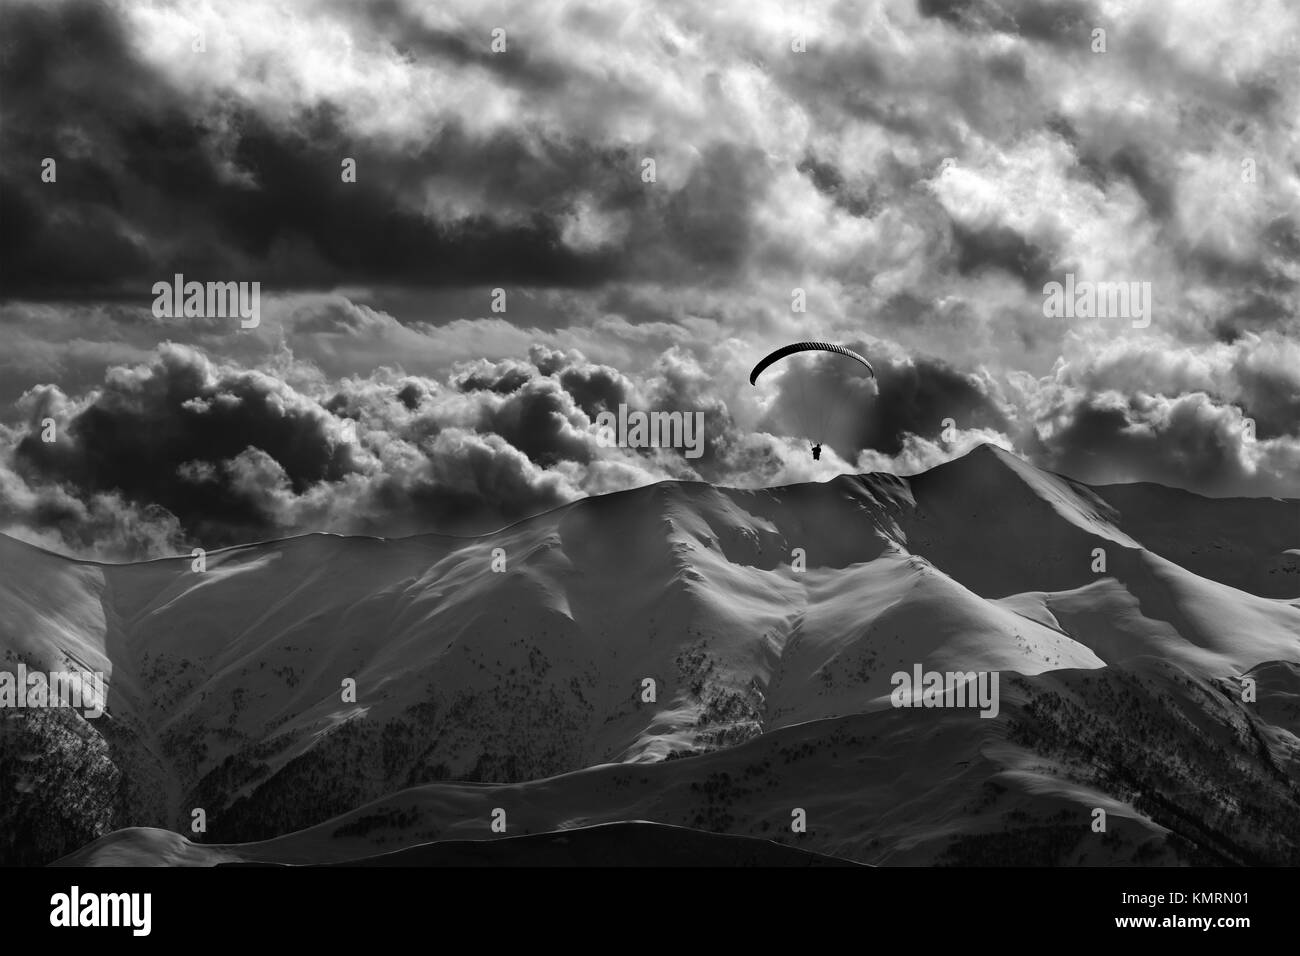 Abend Berg mit Wolken und Silhouette der Fallschirmspringer. Kaukasus Berge. Georgien, Region Gudauri. Schwarz und Weiß getönten Landschaft. Stockfoto